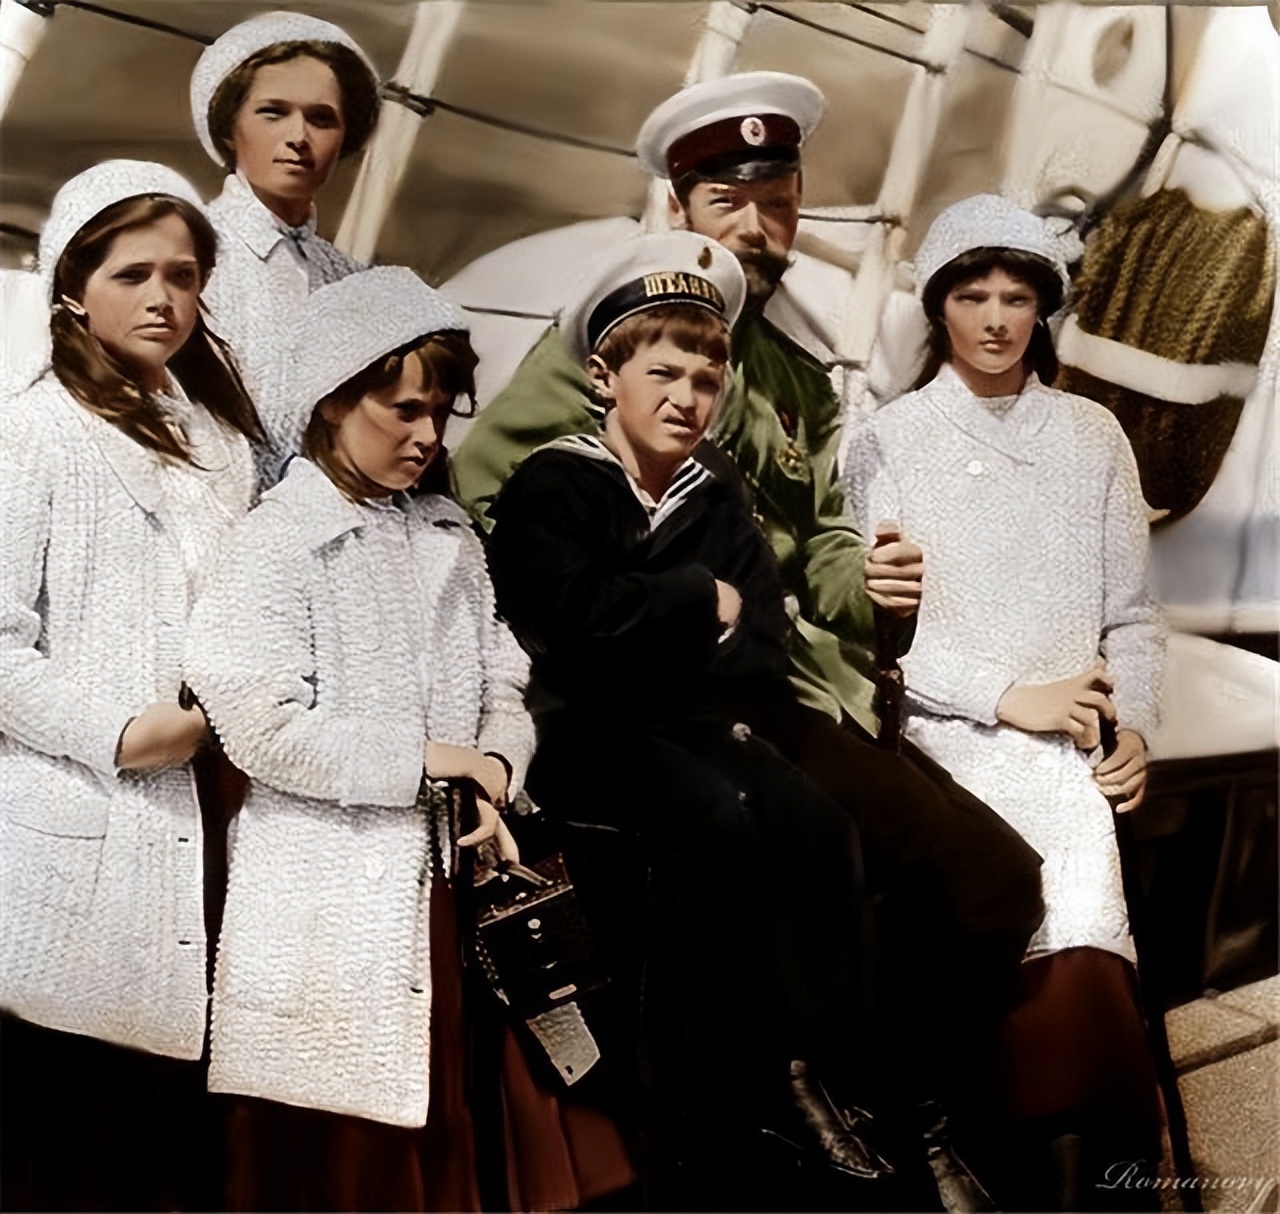 末代沙皇全家的悲惨结局:5个漂亮孩子全部被杀害,最大的才22岁